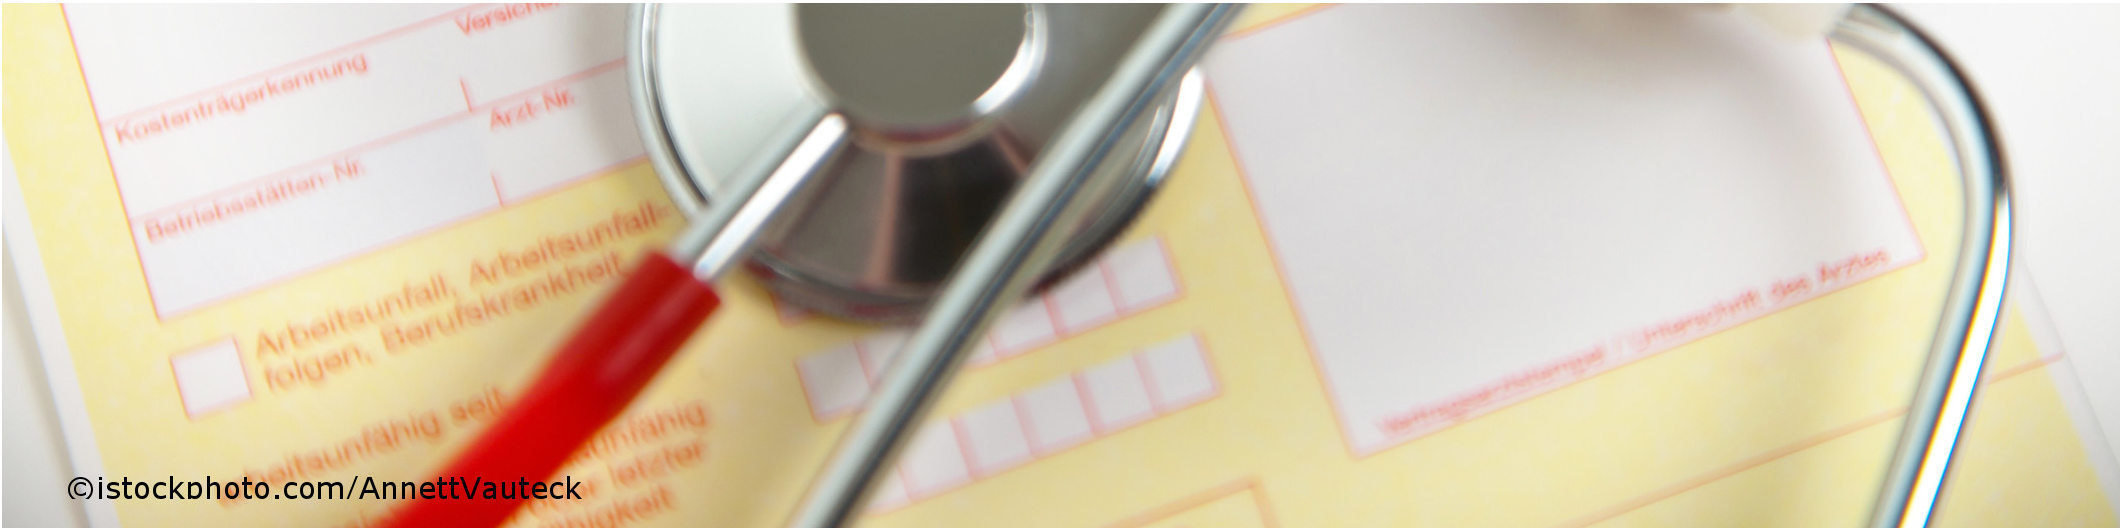 Im ICD-10 Diagnoseschlüssel steht A82 für die meldepflichtige Infektionserkrankung Tollwut.